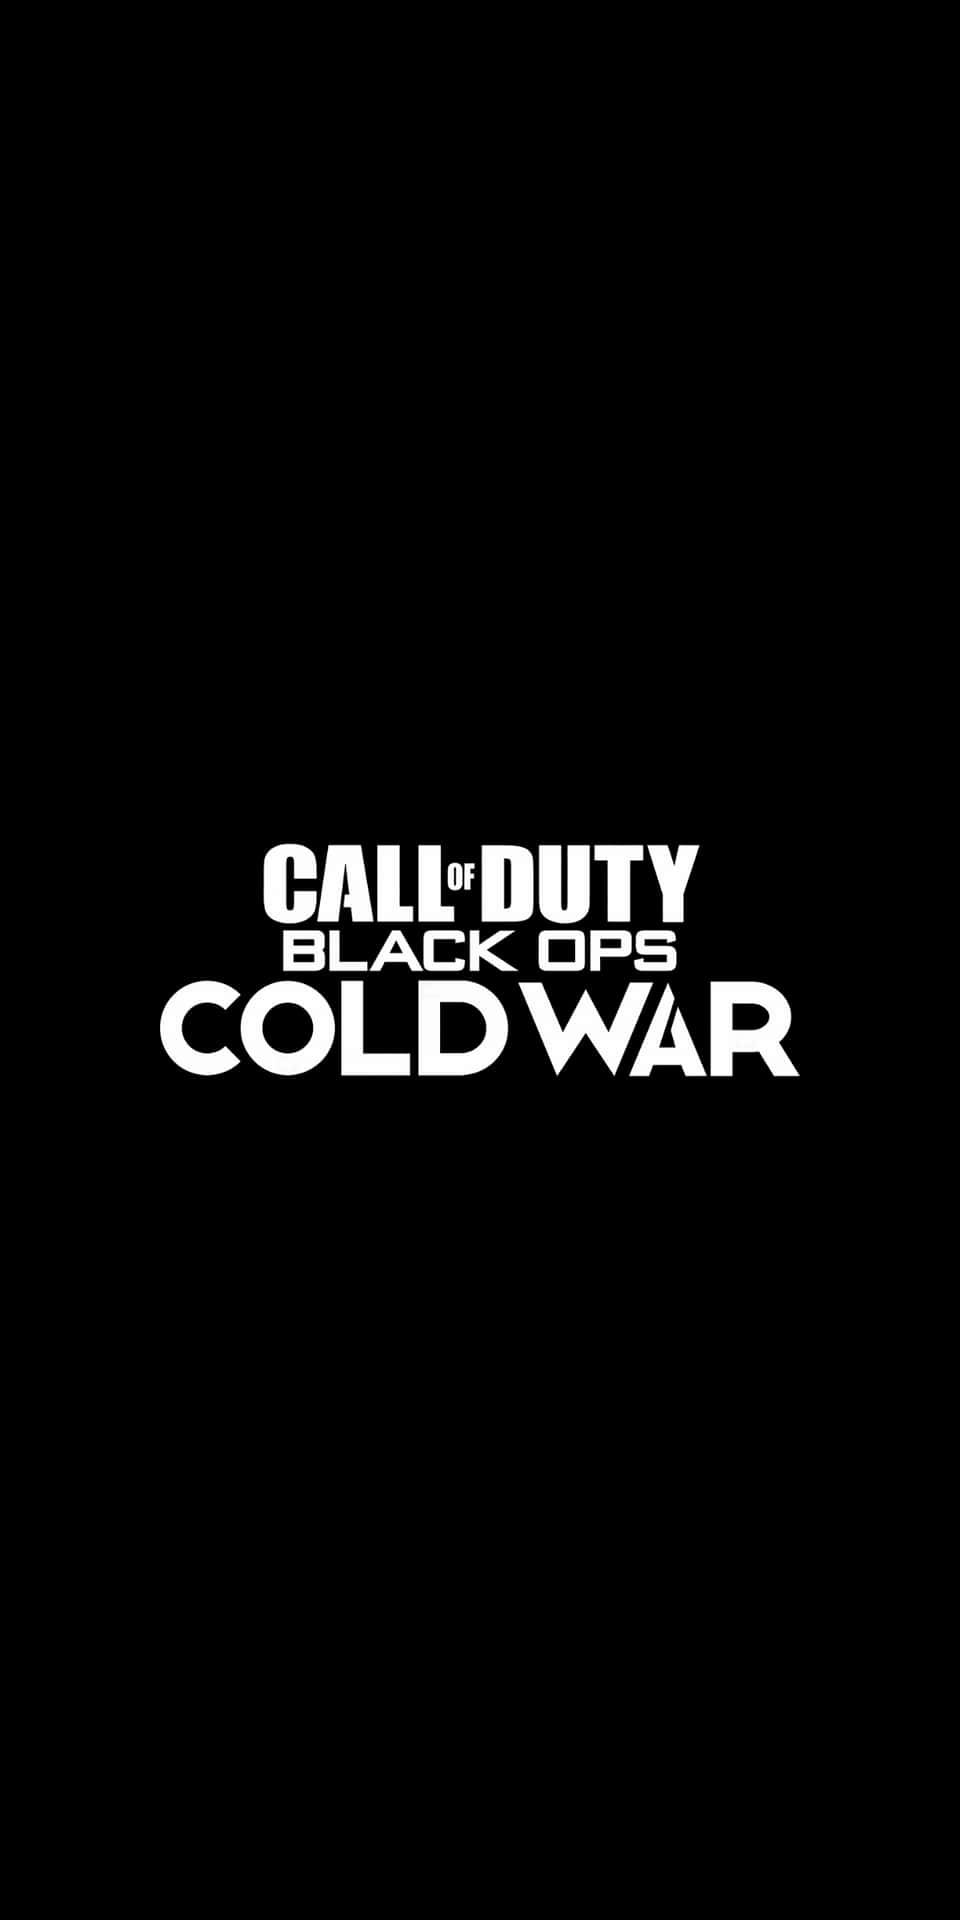 Fondode Pantalla De Call Of Duty Black Ops Cold War Para Pixel 3